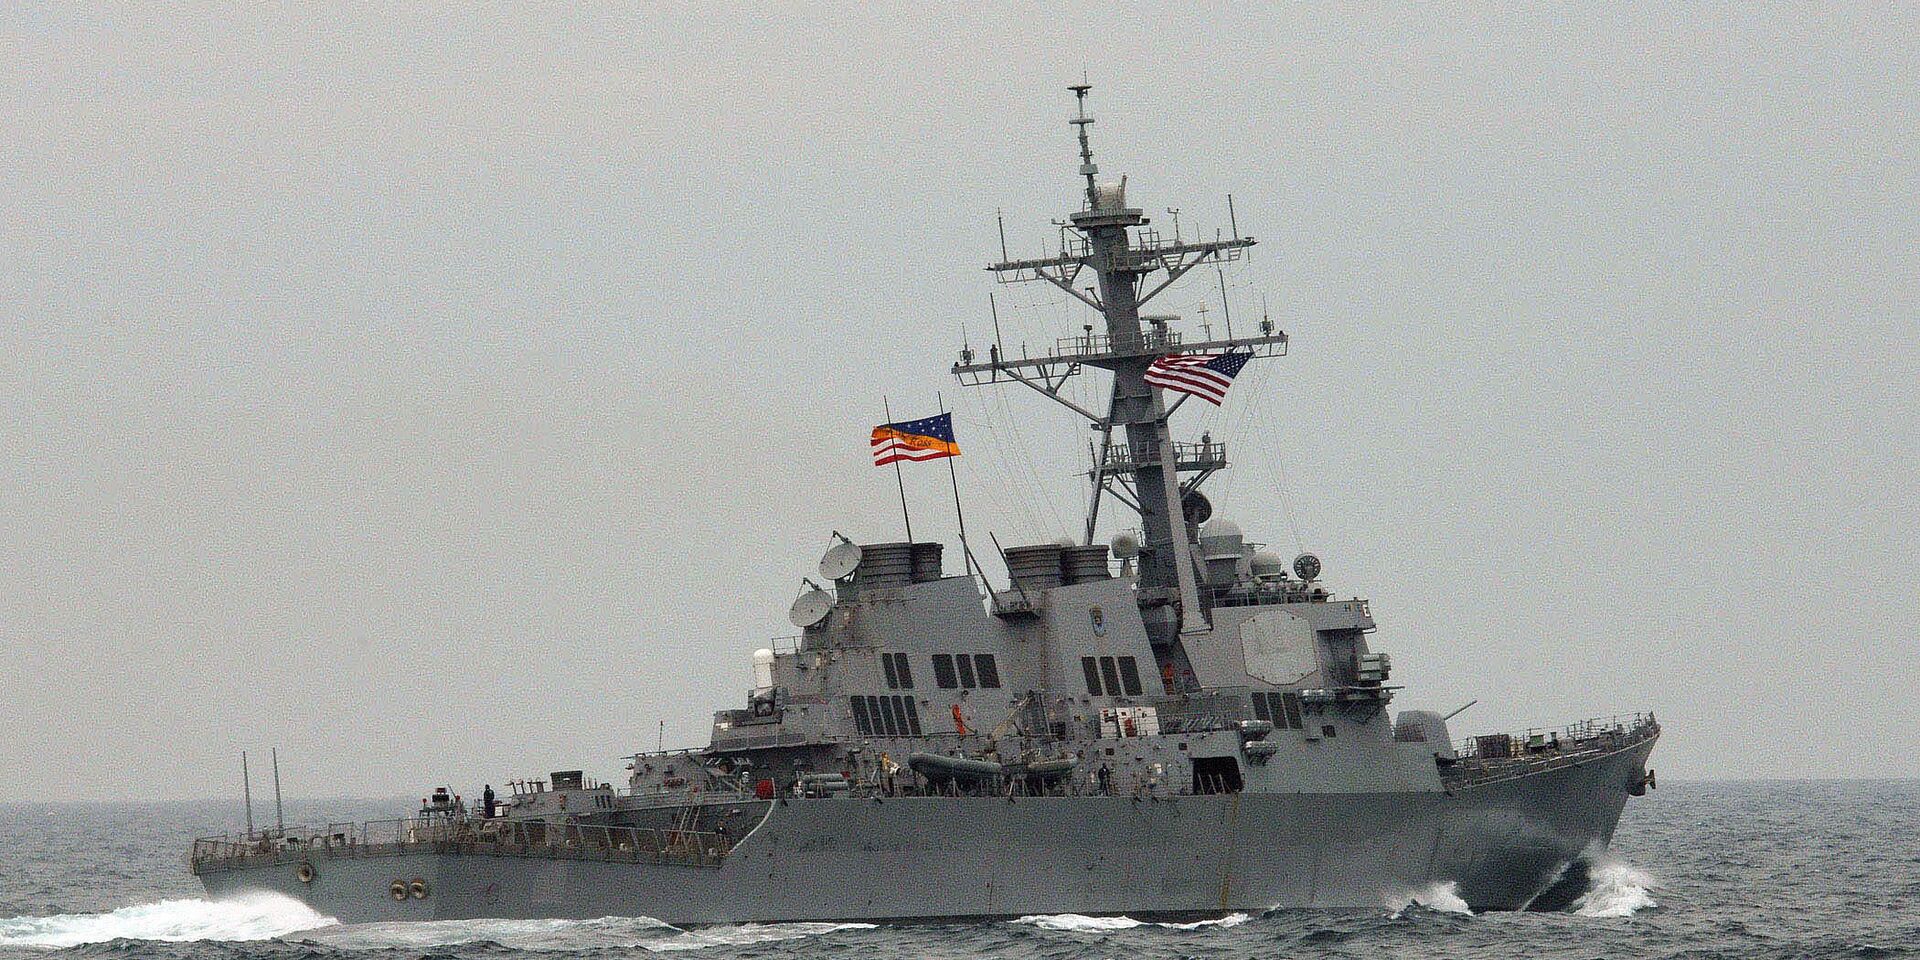 Командир американского корабля был в недоумении, когда по его эсминцу нанесли удар ракетами, каких он никогда не видел у пиратов